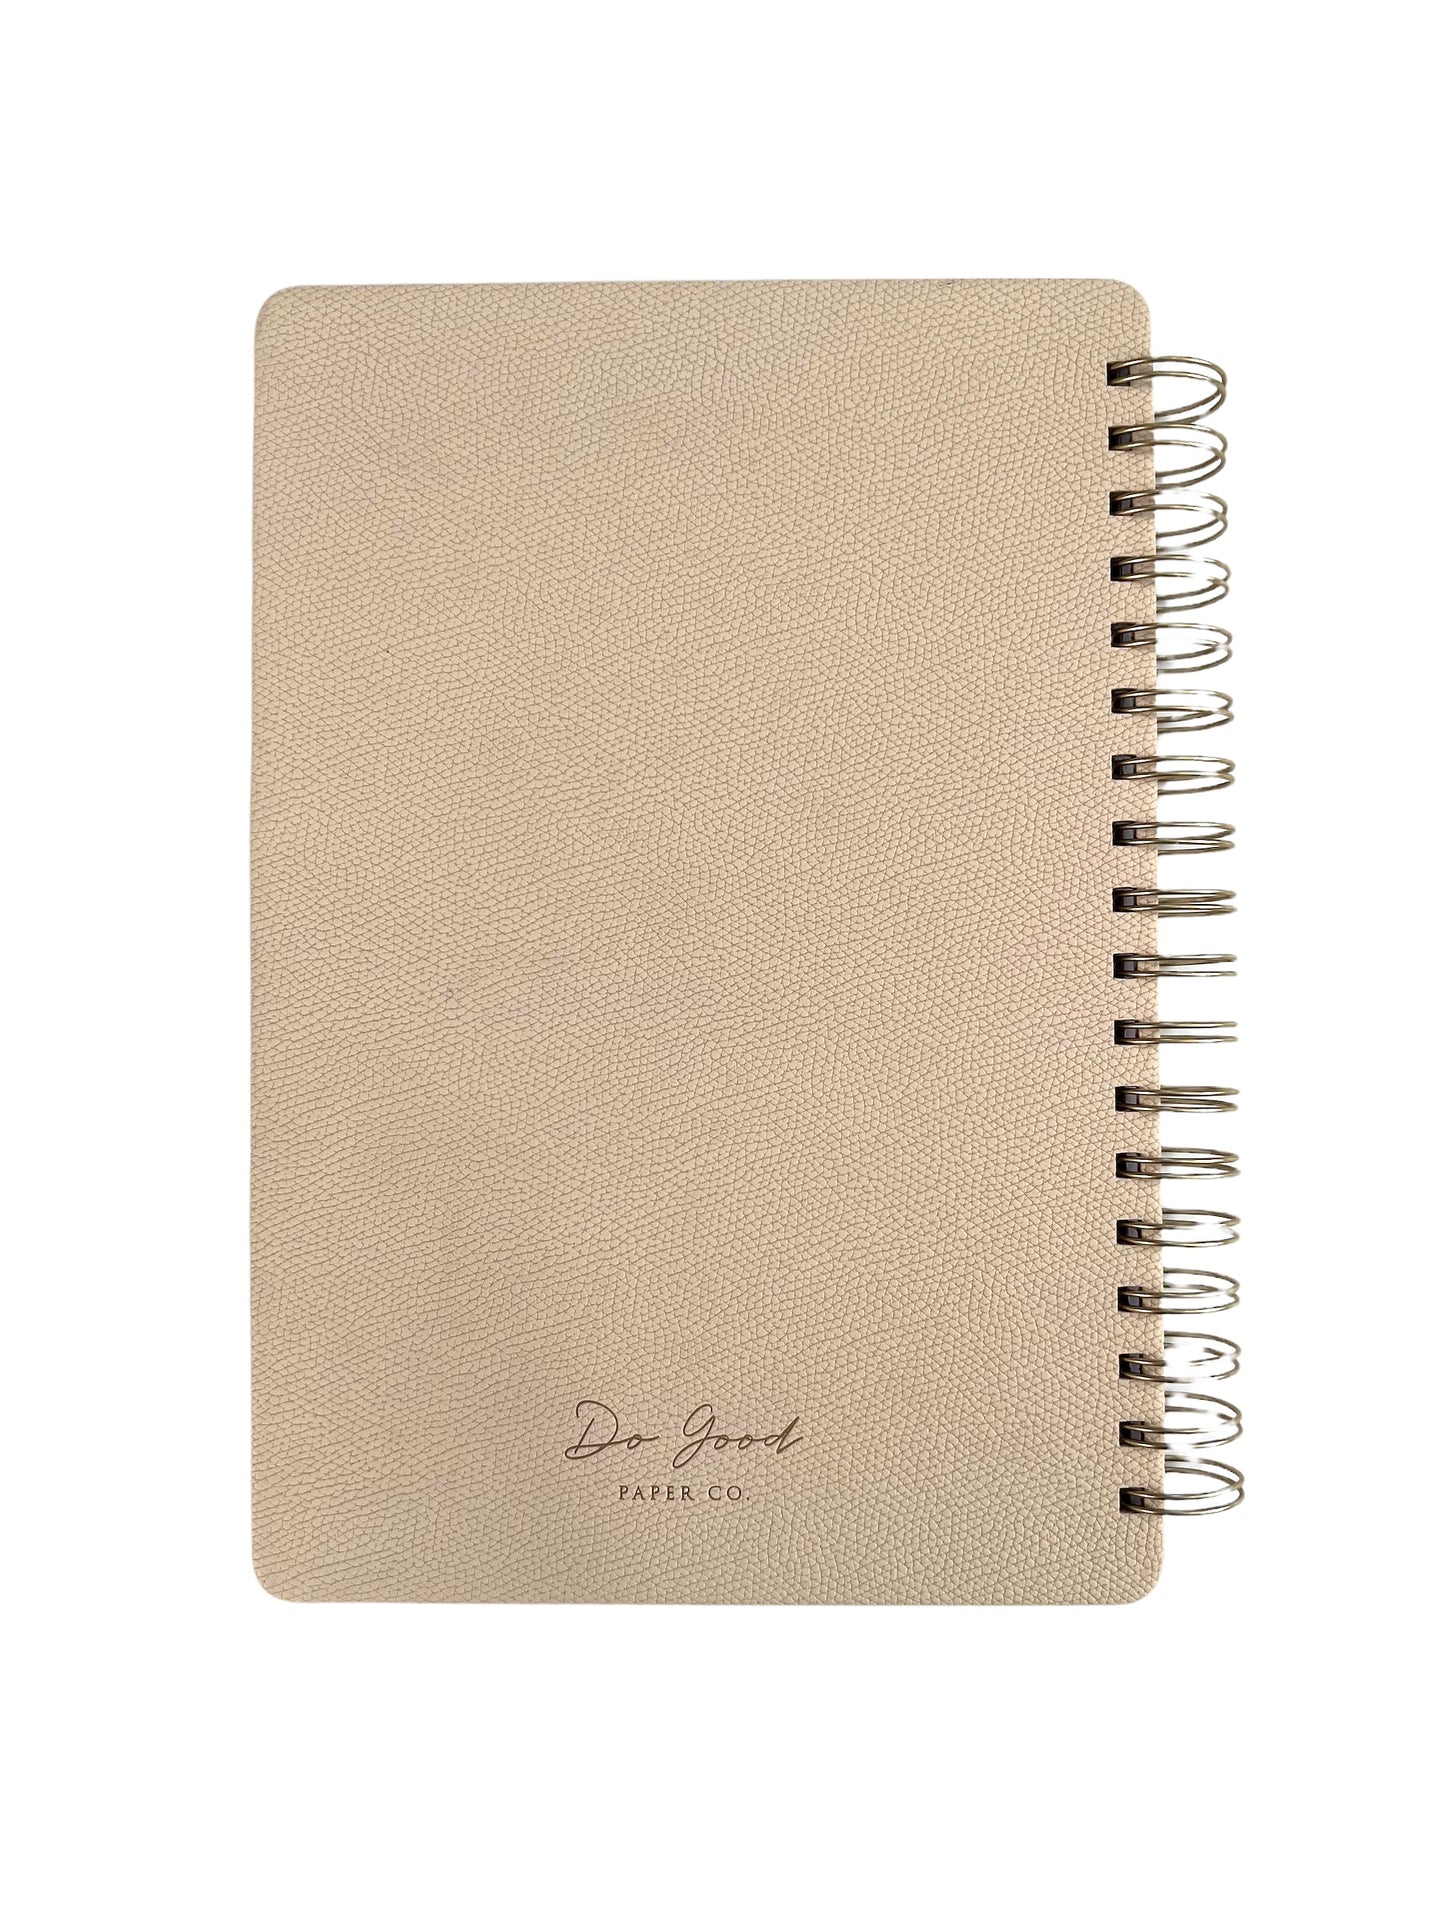 Medium spiral notebook in beige, vegan leather with gold spirals